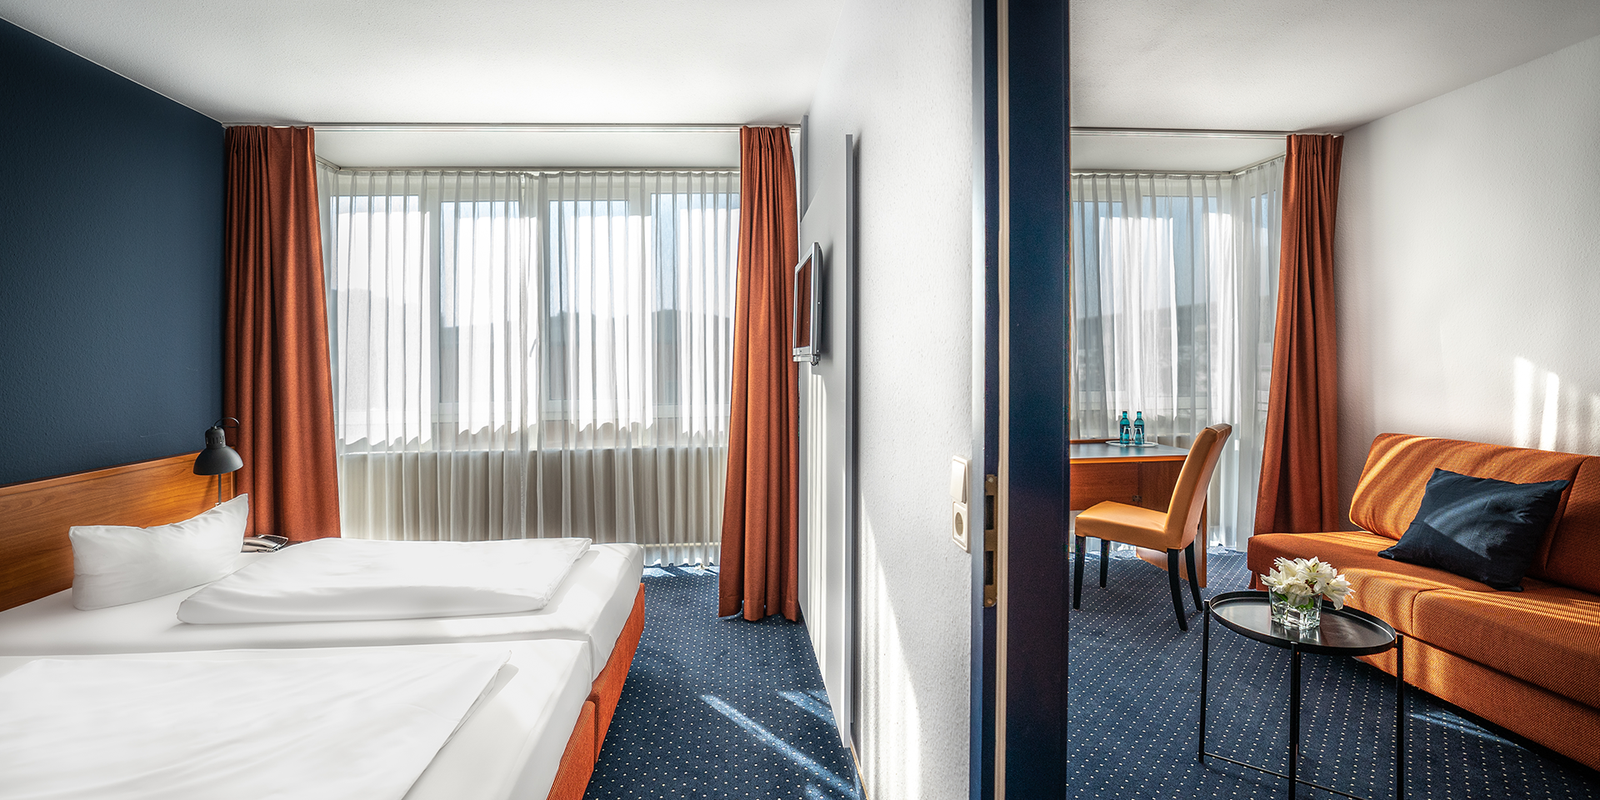 Zwei-Zimmer-Apartment im ACHAT Hotel Dresden Altstadt